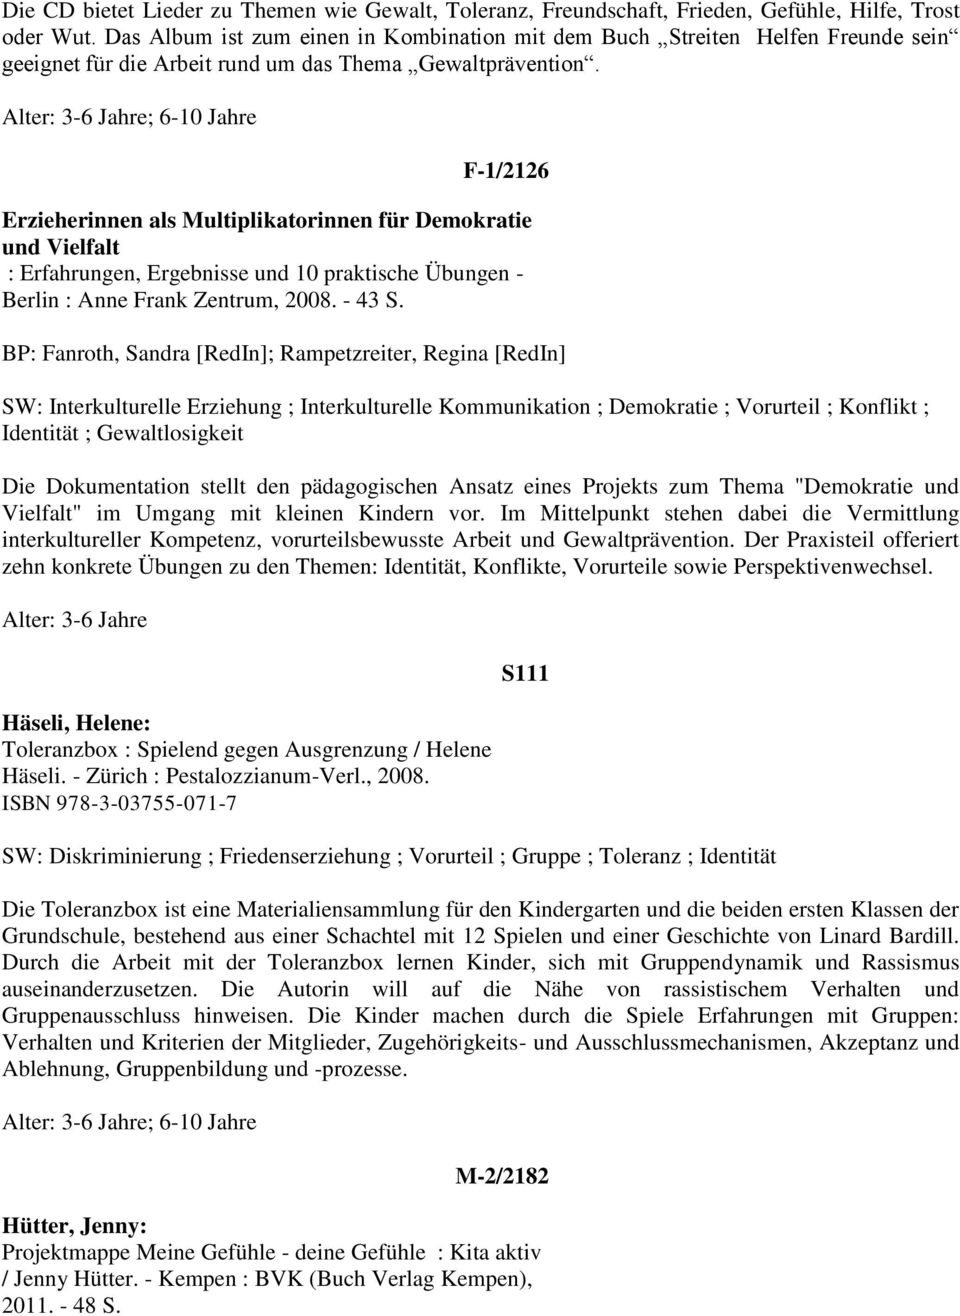 F-1/2126 Erzieherinnen als Multiplikatorinnen für Demokratie und Vielfalt : Erfahrungen, Ergebnisse und 10 praktische Übungen - Berlin : Anne Frank Zentrum, 2008. - 43 S.